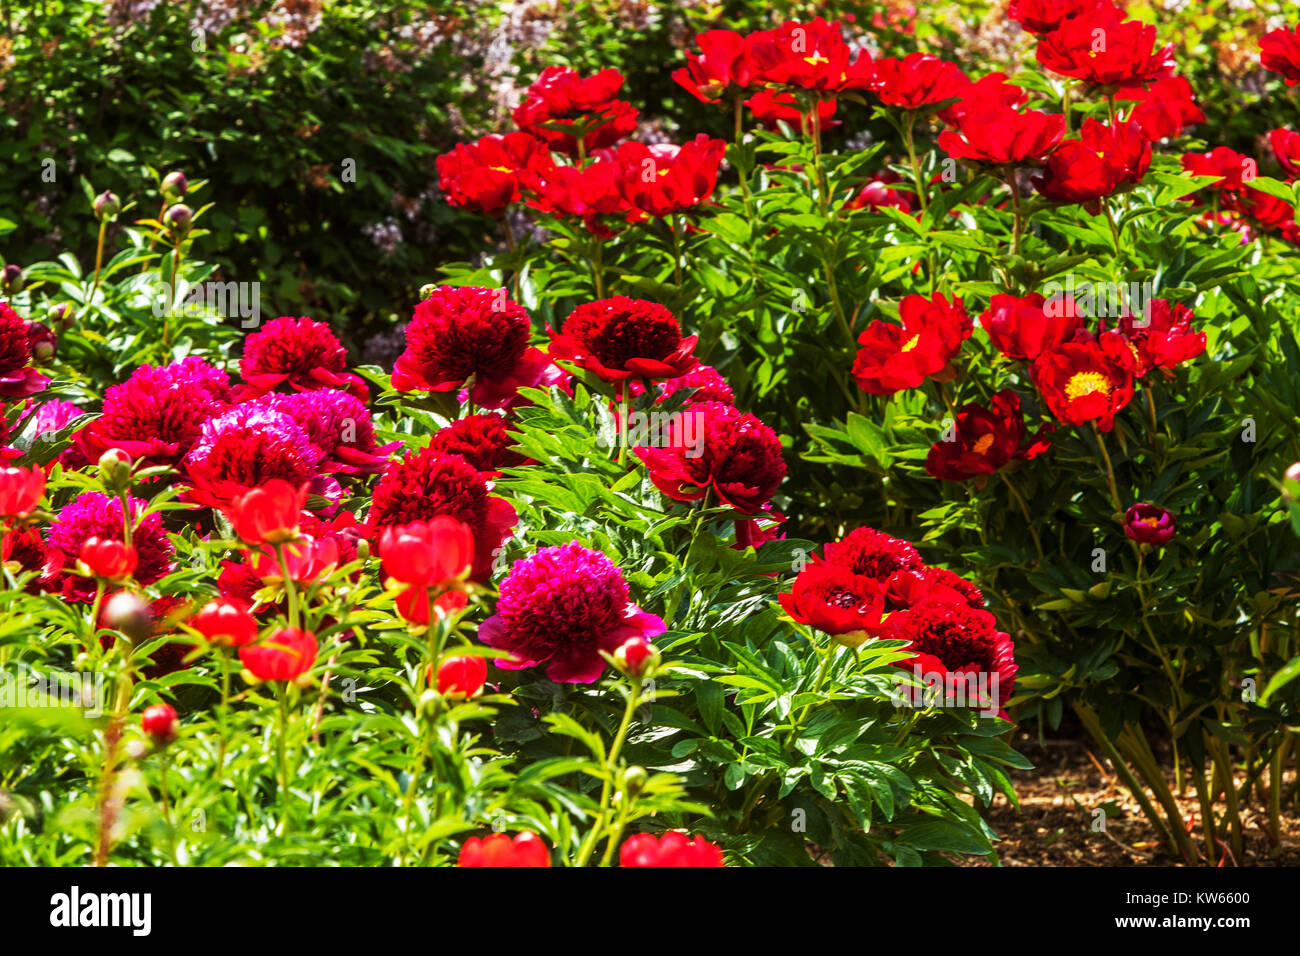 Red Päonien Garten, Pfingstrose, Paeonia lactiflora, schöne Blume Garten Stockfoto